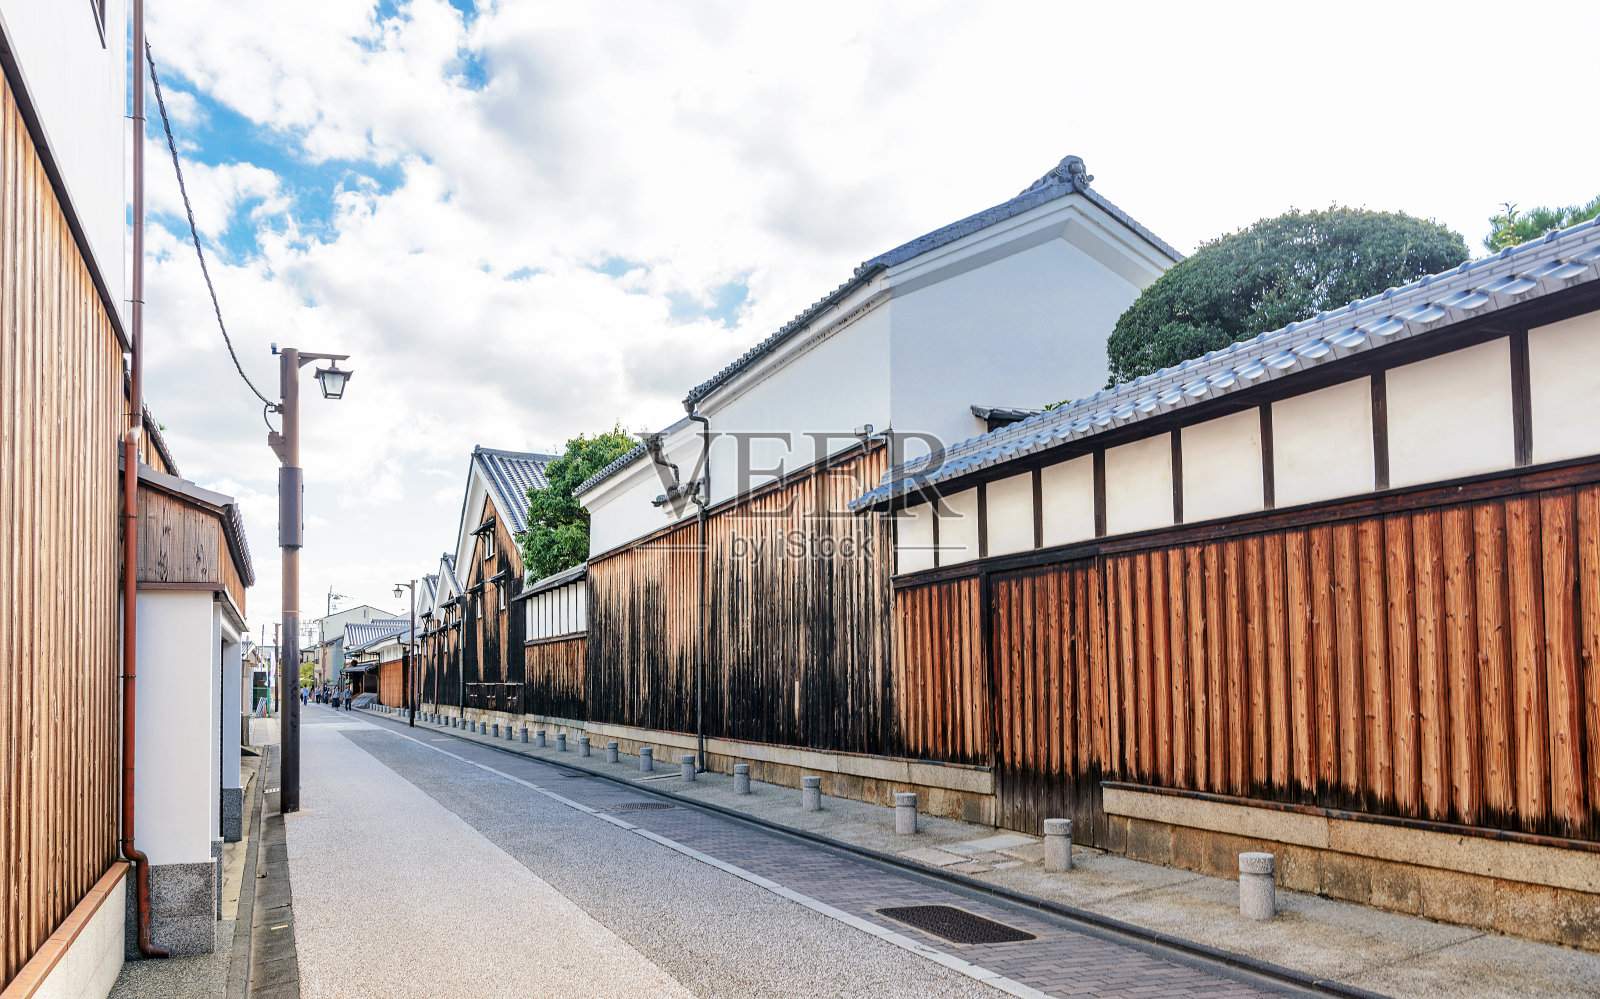 京都富士密镇景照片摄影图片